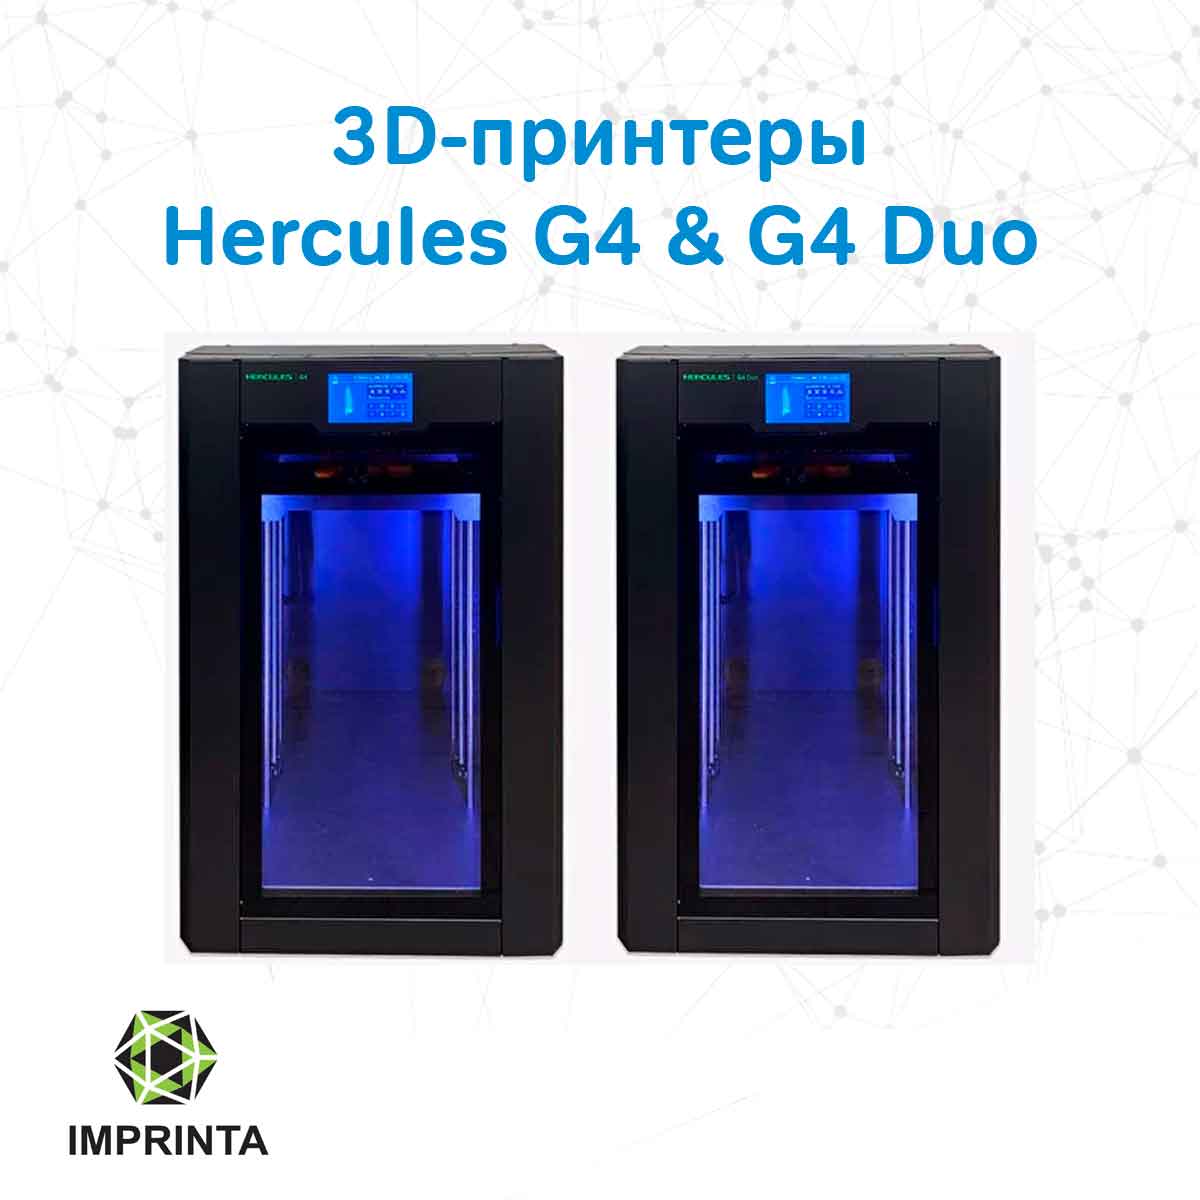 Встречайте 3D-принтеры Hercules G4 и G4 Duo